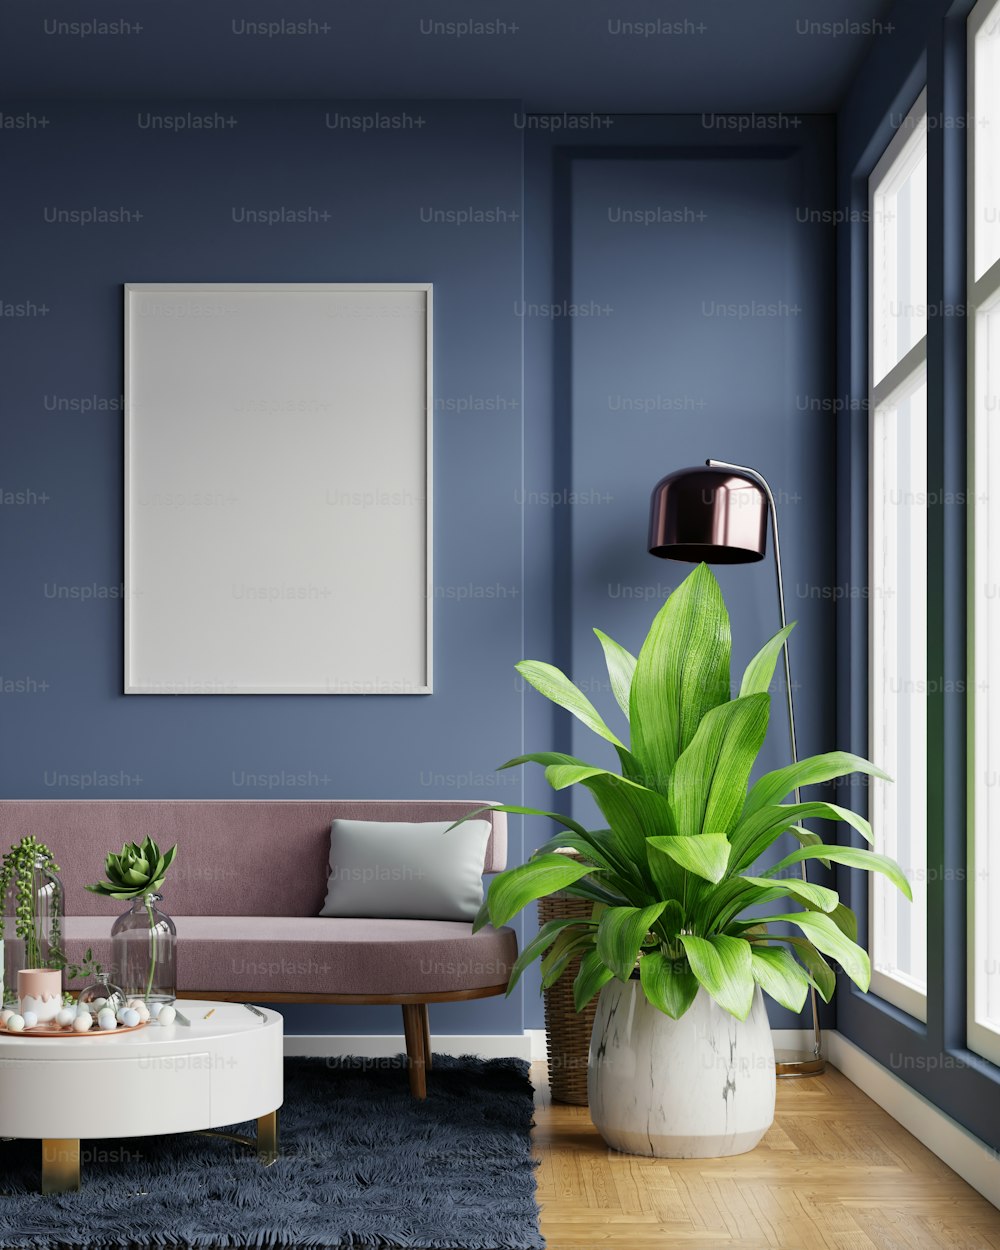 Poster-Mockup mit vertikalen Rahmen an leerer dunkelblauer Wand im Wohnzimmer-Interieur mit rosa Samtsofa.3D Rendering